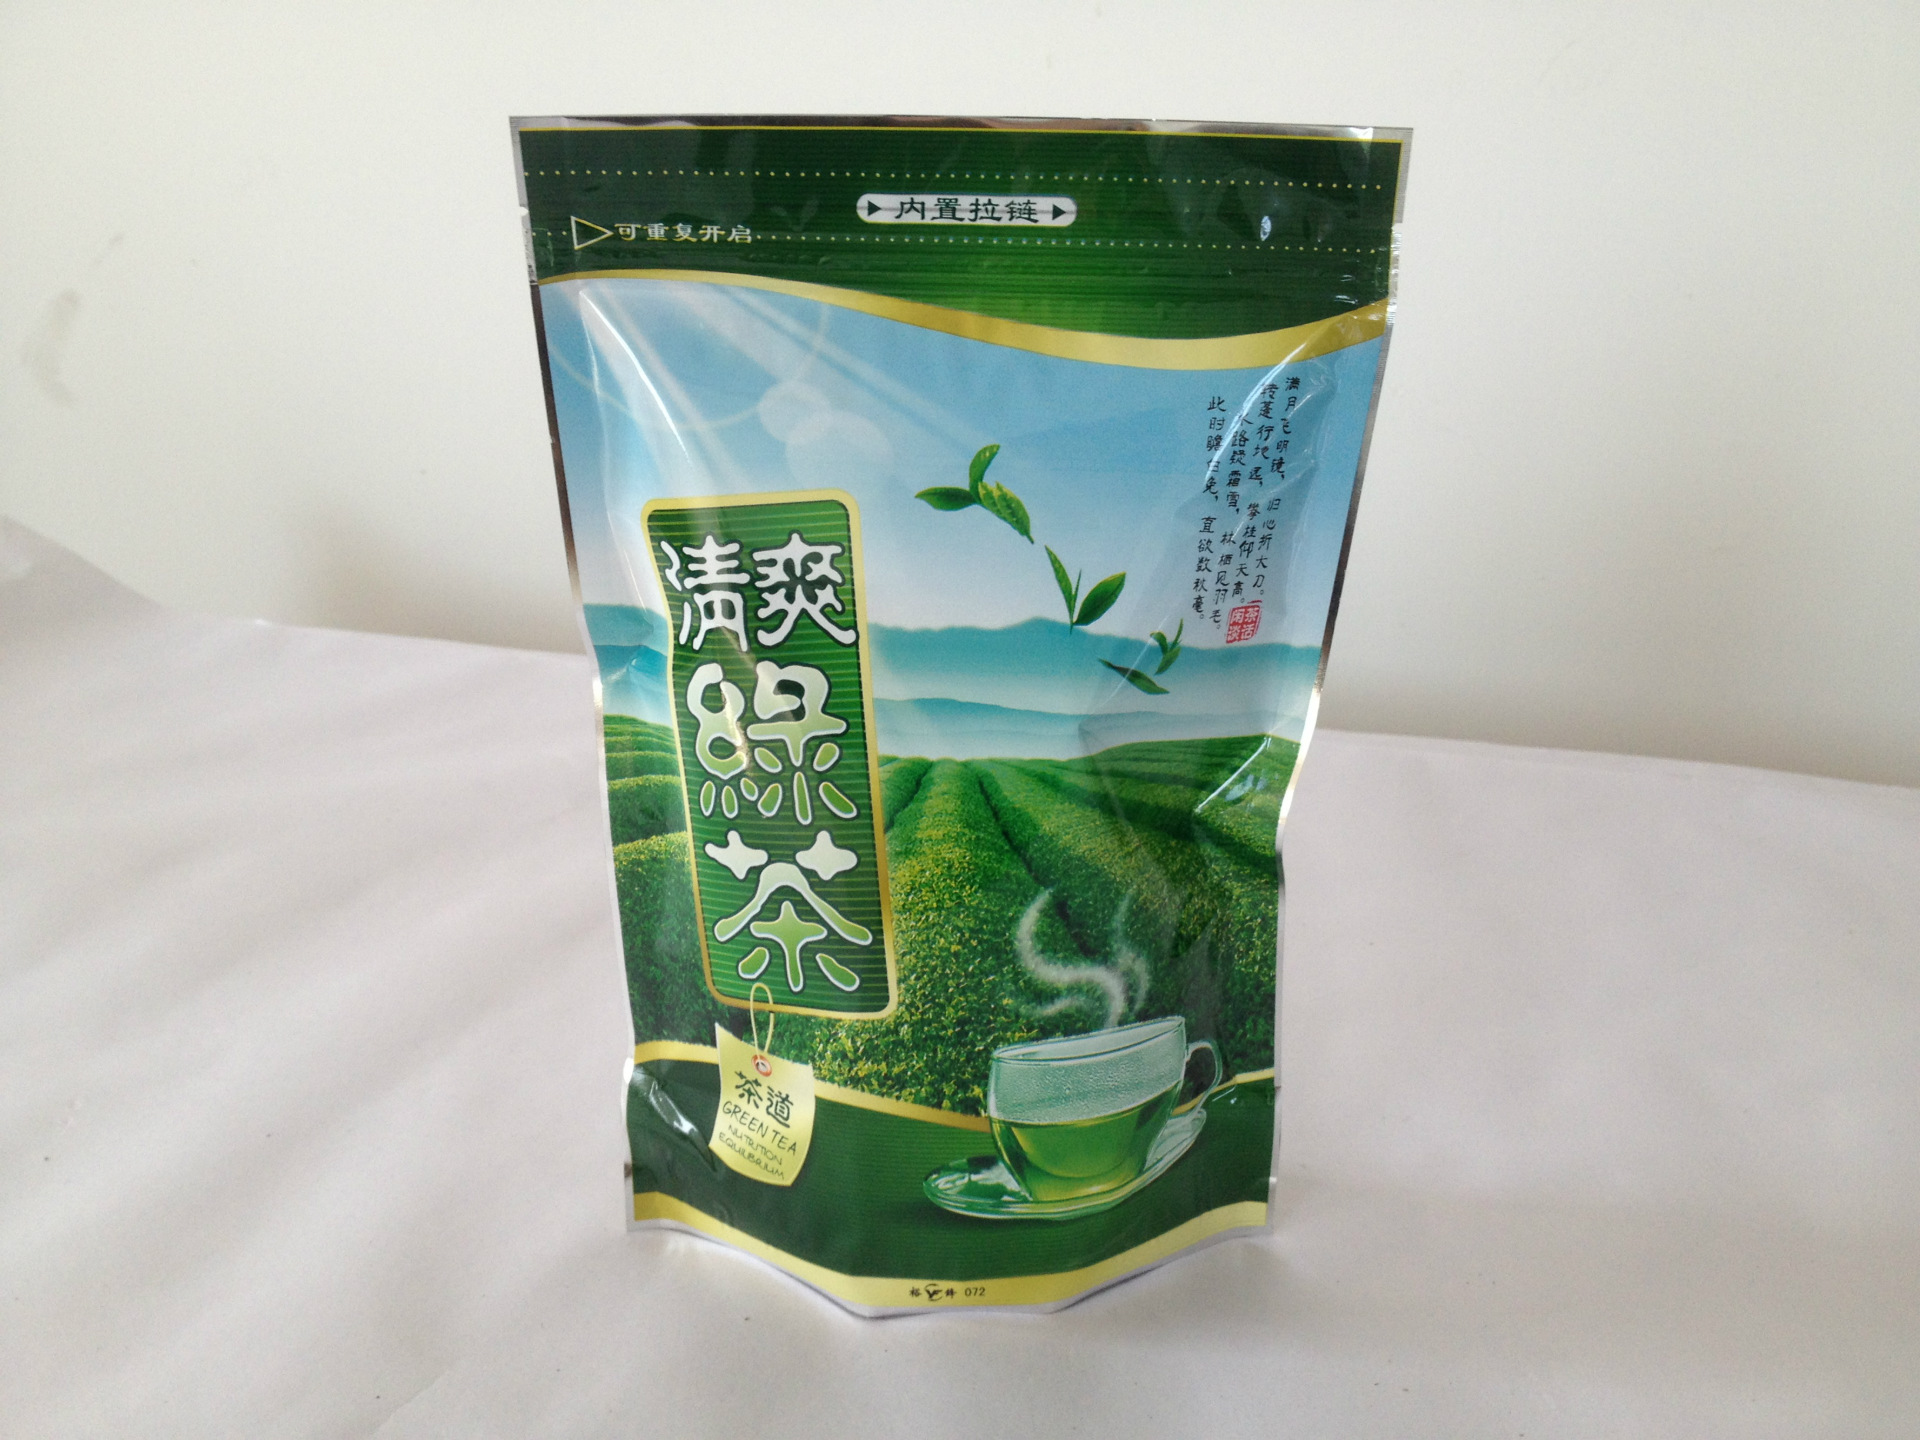 高档精美 茶叶包装袋 茶叶真空包装袋 质量保障 可定制加工